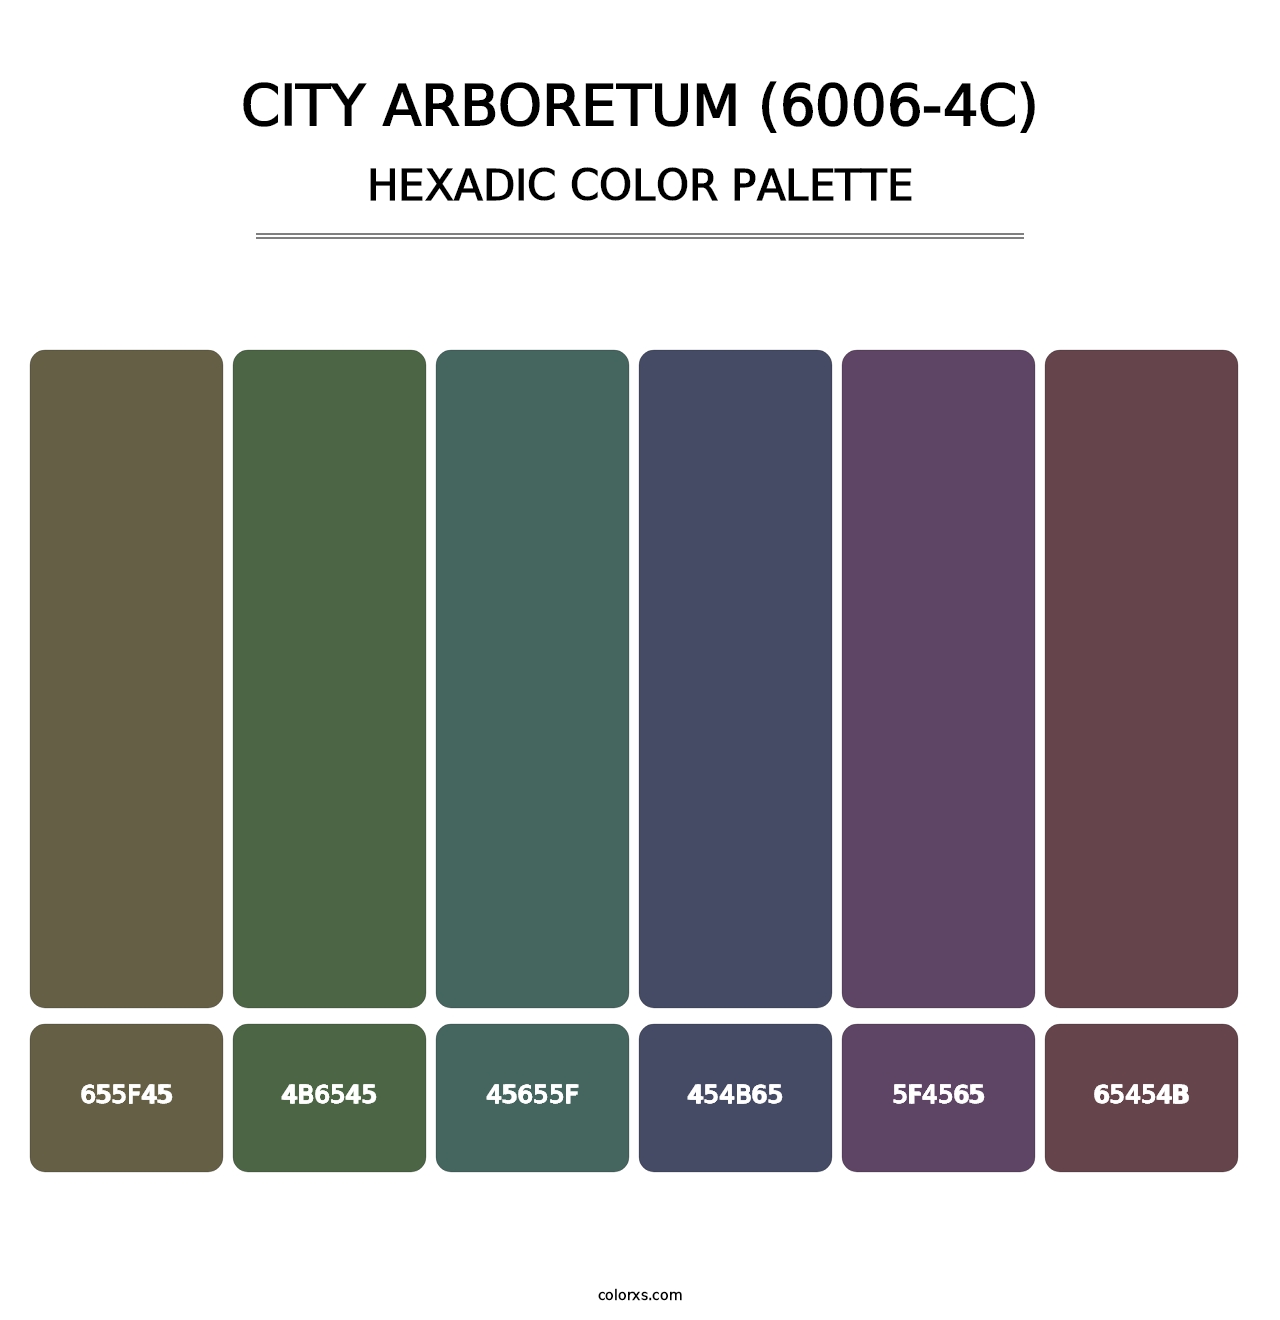 City Arboretum (6006-4C) - Hexadic Color Palette